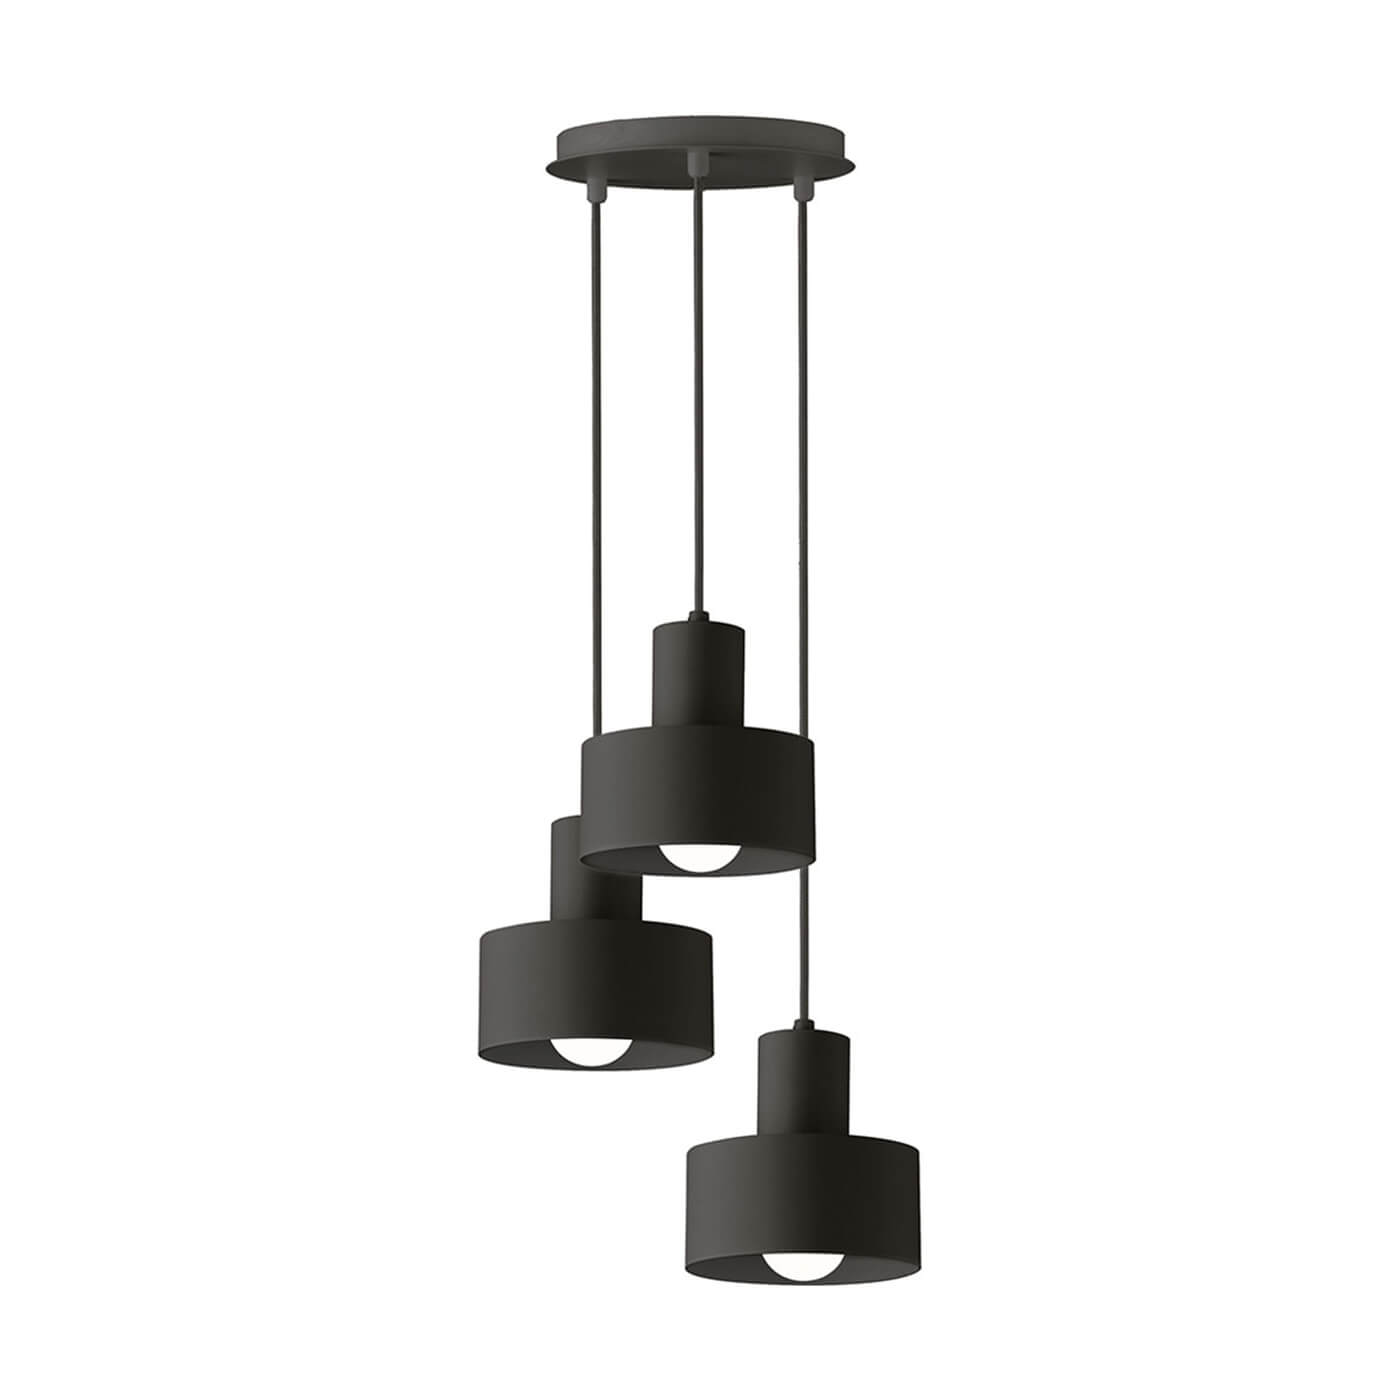 Cauti o lampa suspendata neagra NORTON S3 din metal, design minimalist, elegant, pentru living, dining sau dormitor din colectia de lustre si candelabre Domicilio?